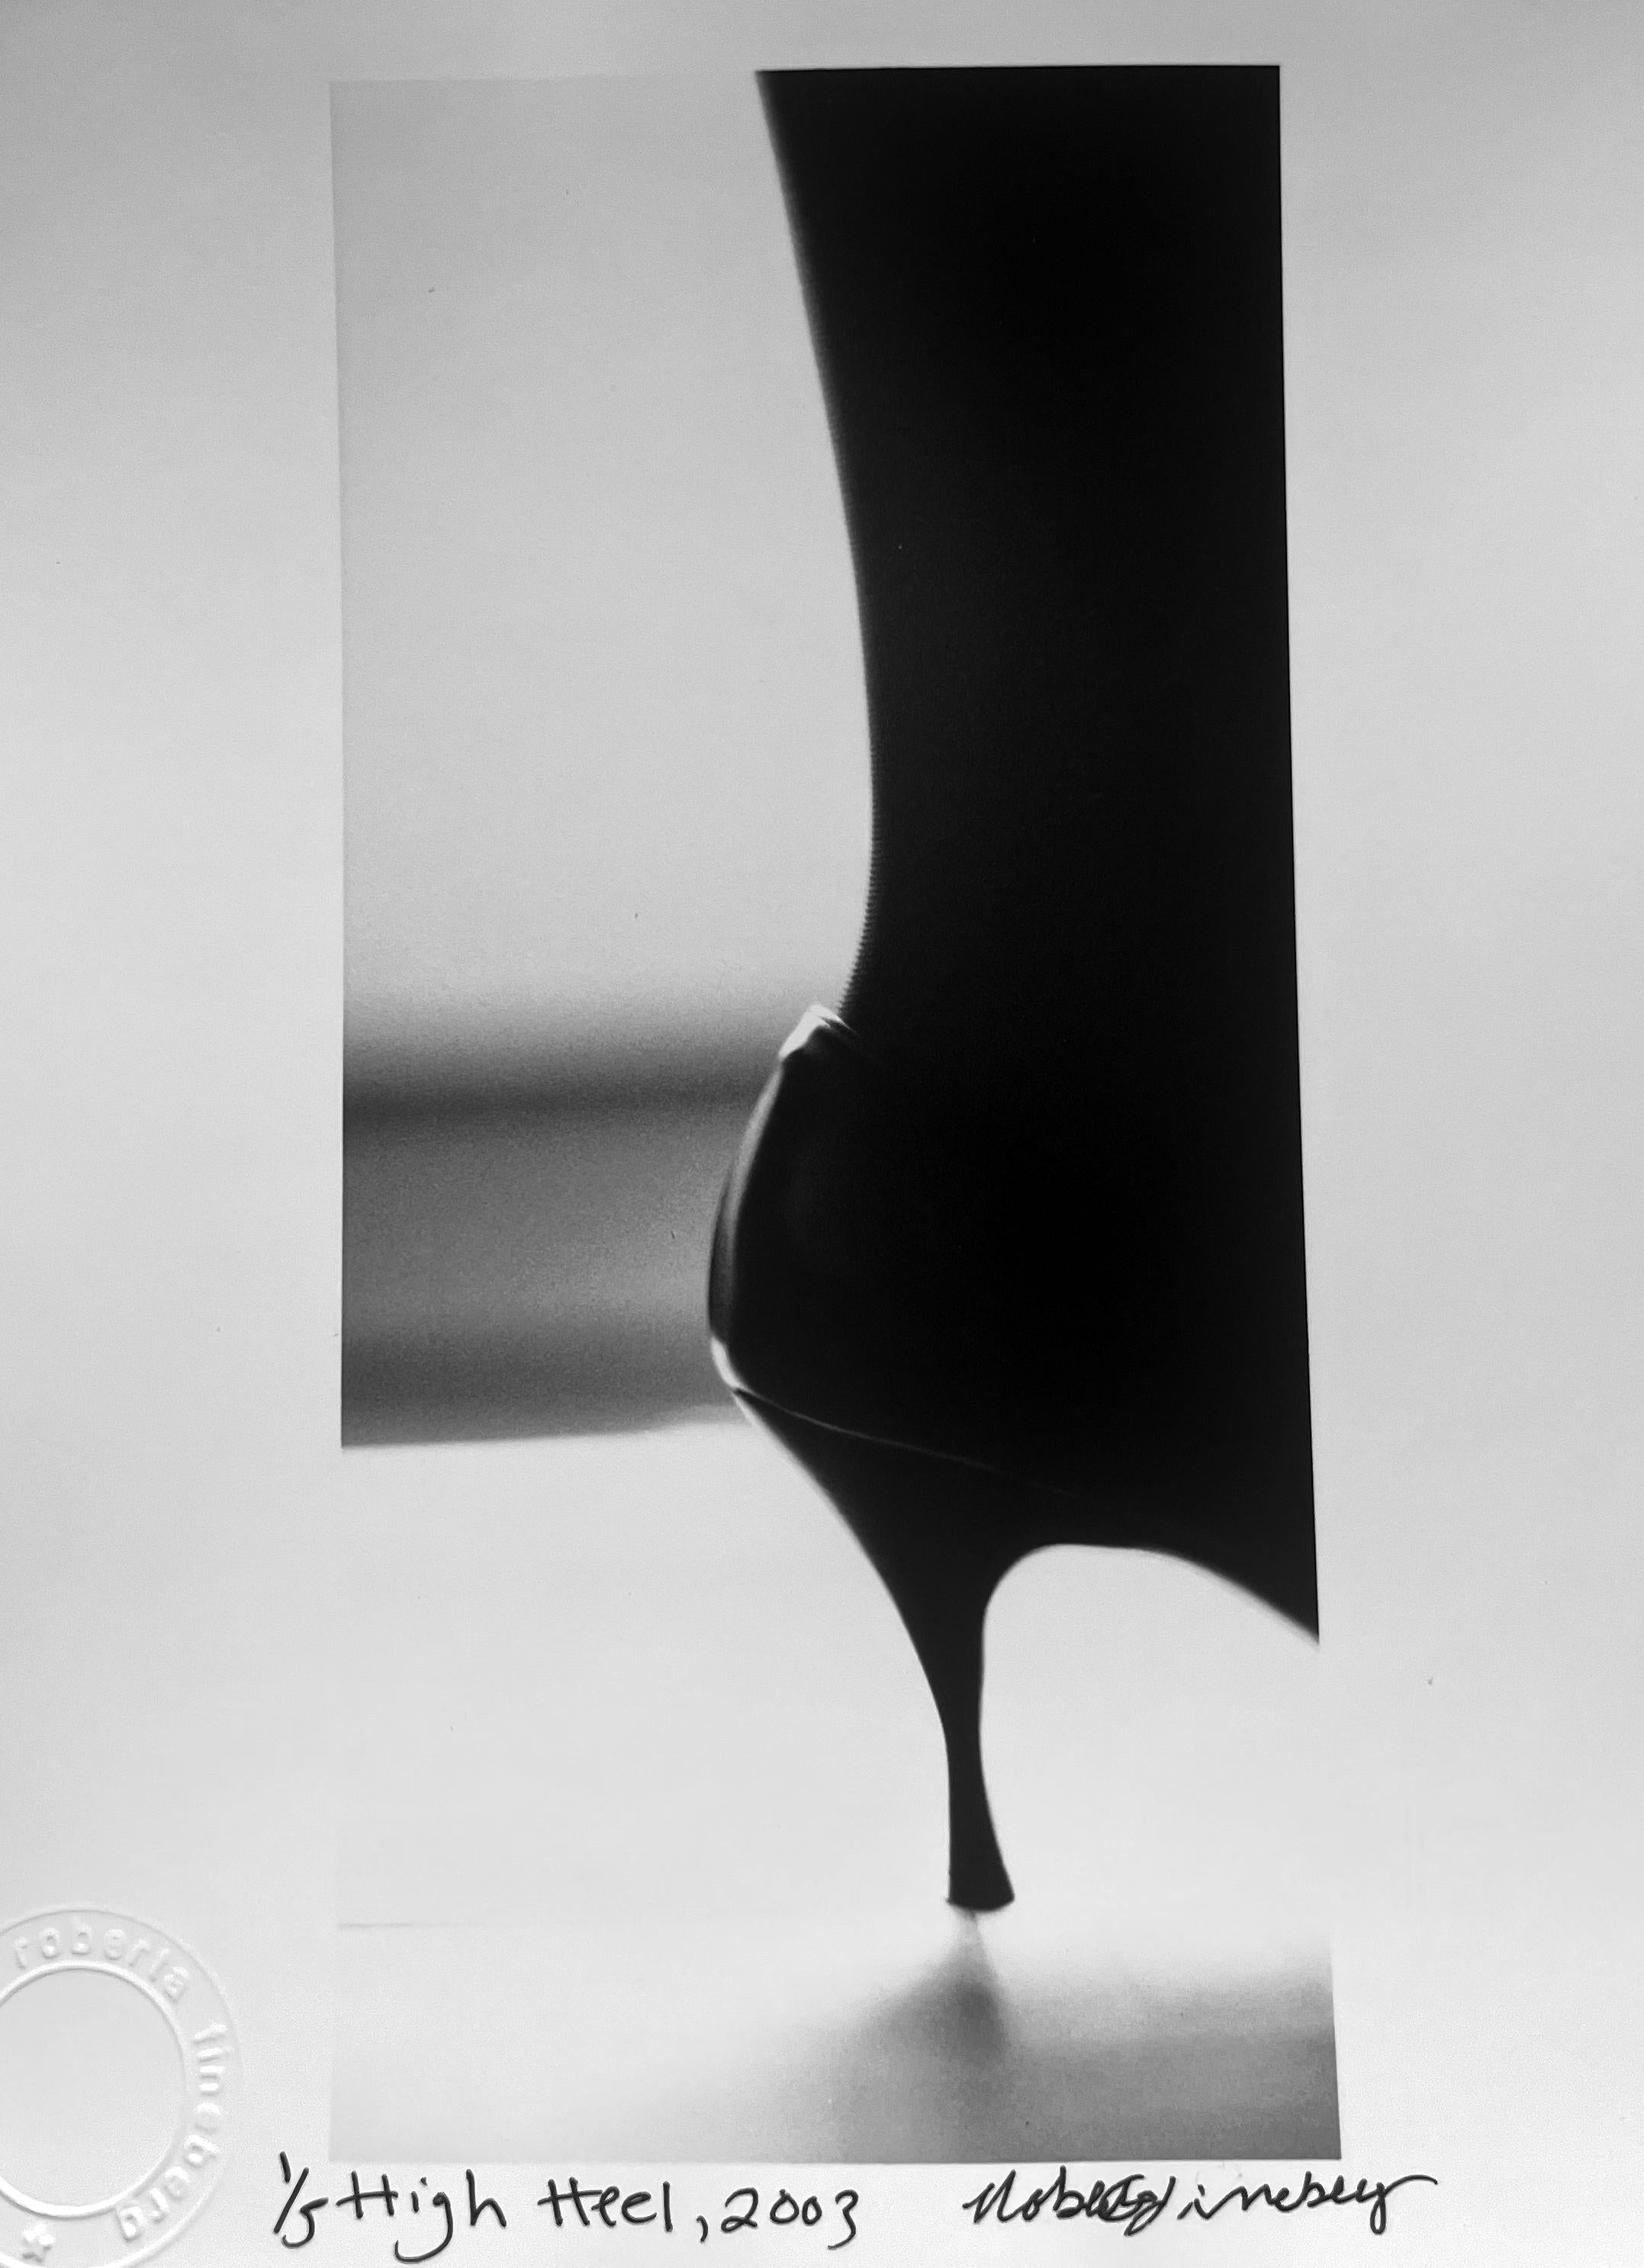 Roberta Fineberg Black and White Photograph – High Heel, Schwarz-Weiß-Fotografie eines Stileto Memento Mori mit hohem Absatz